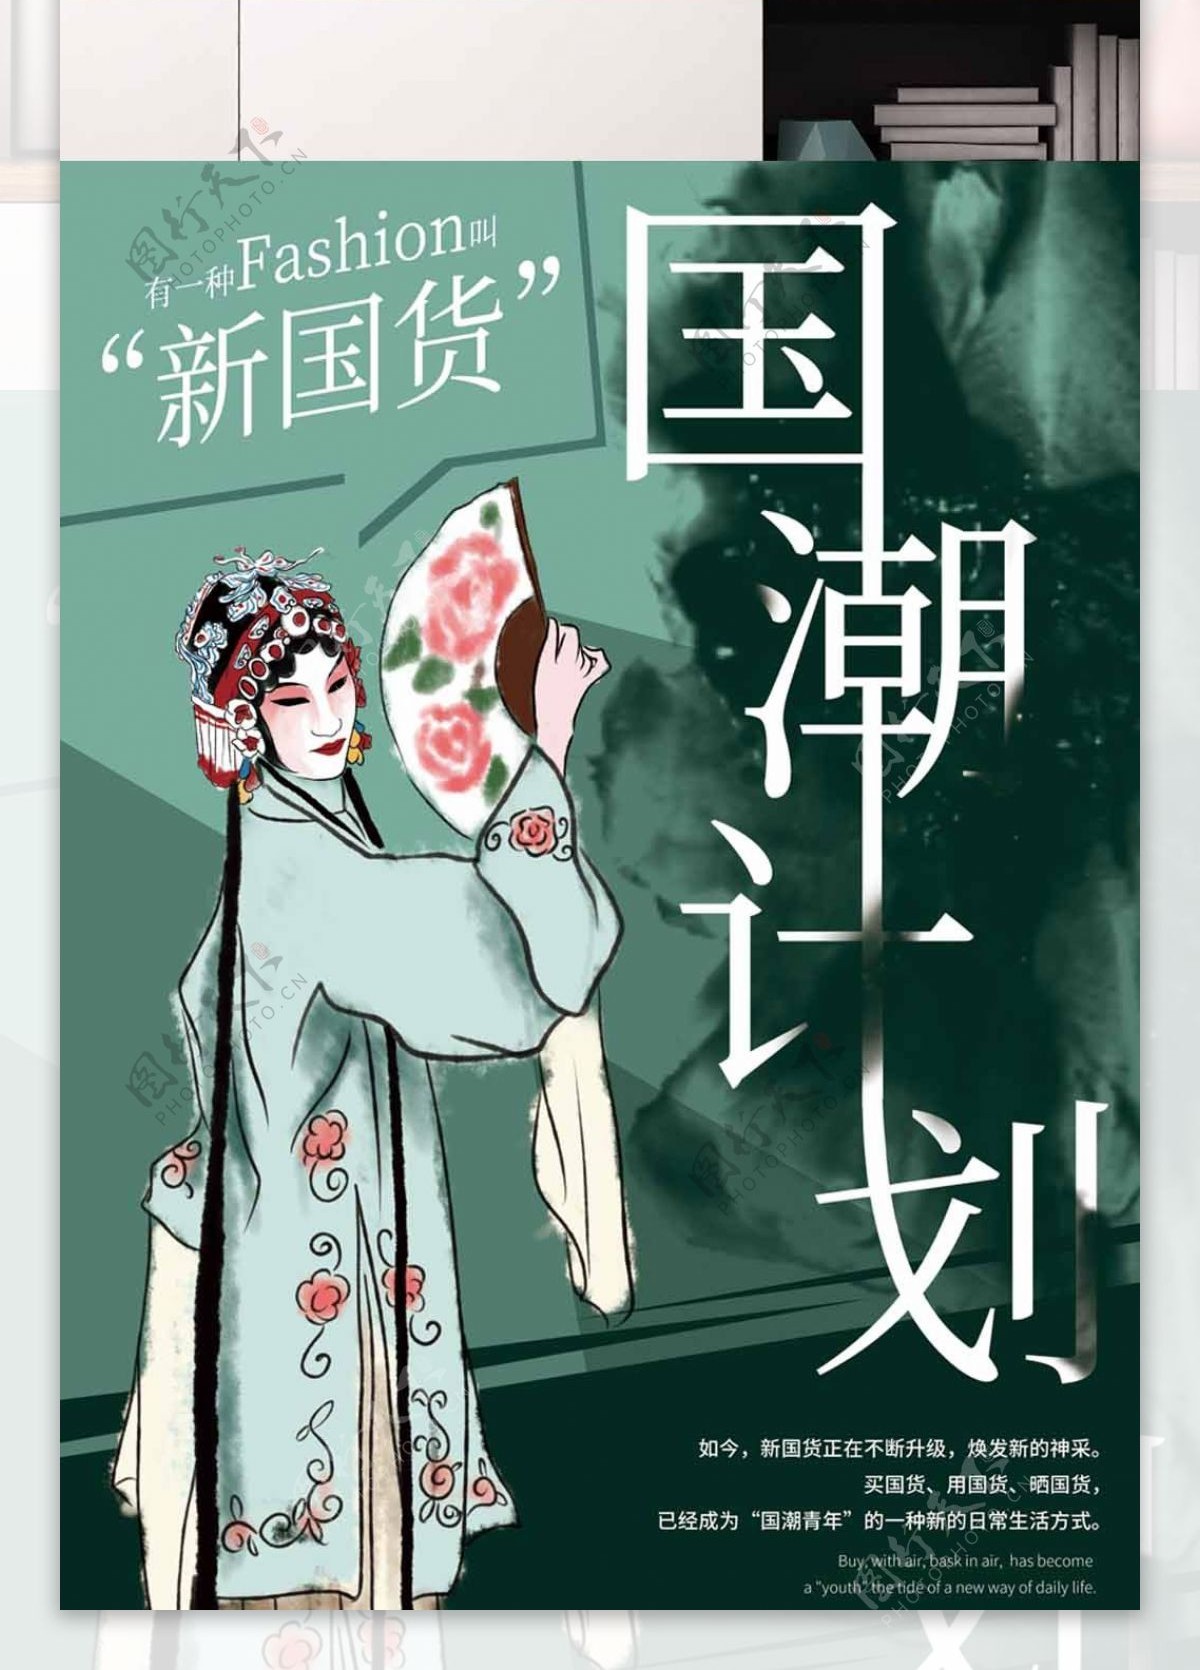 中国风戏曲国潮计划海报